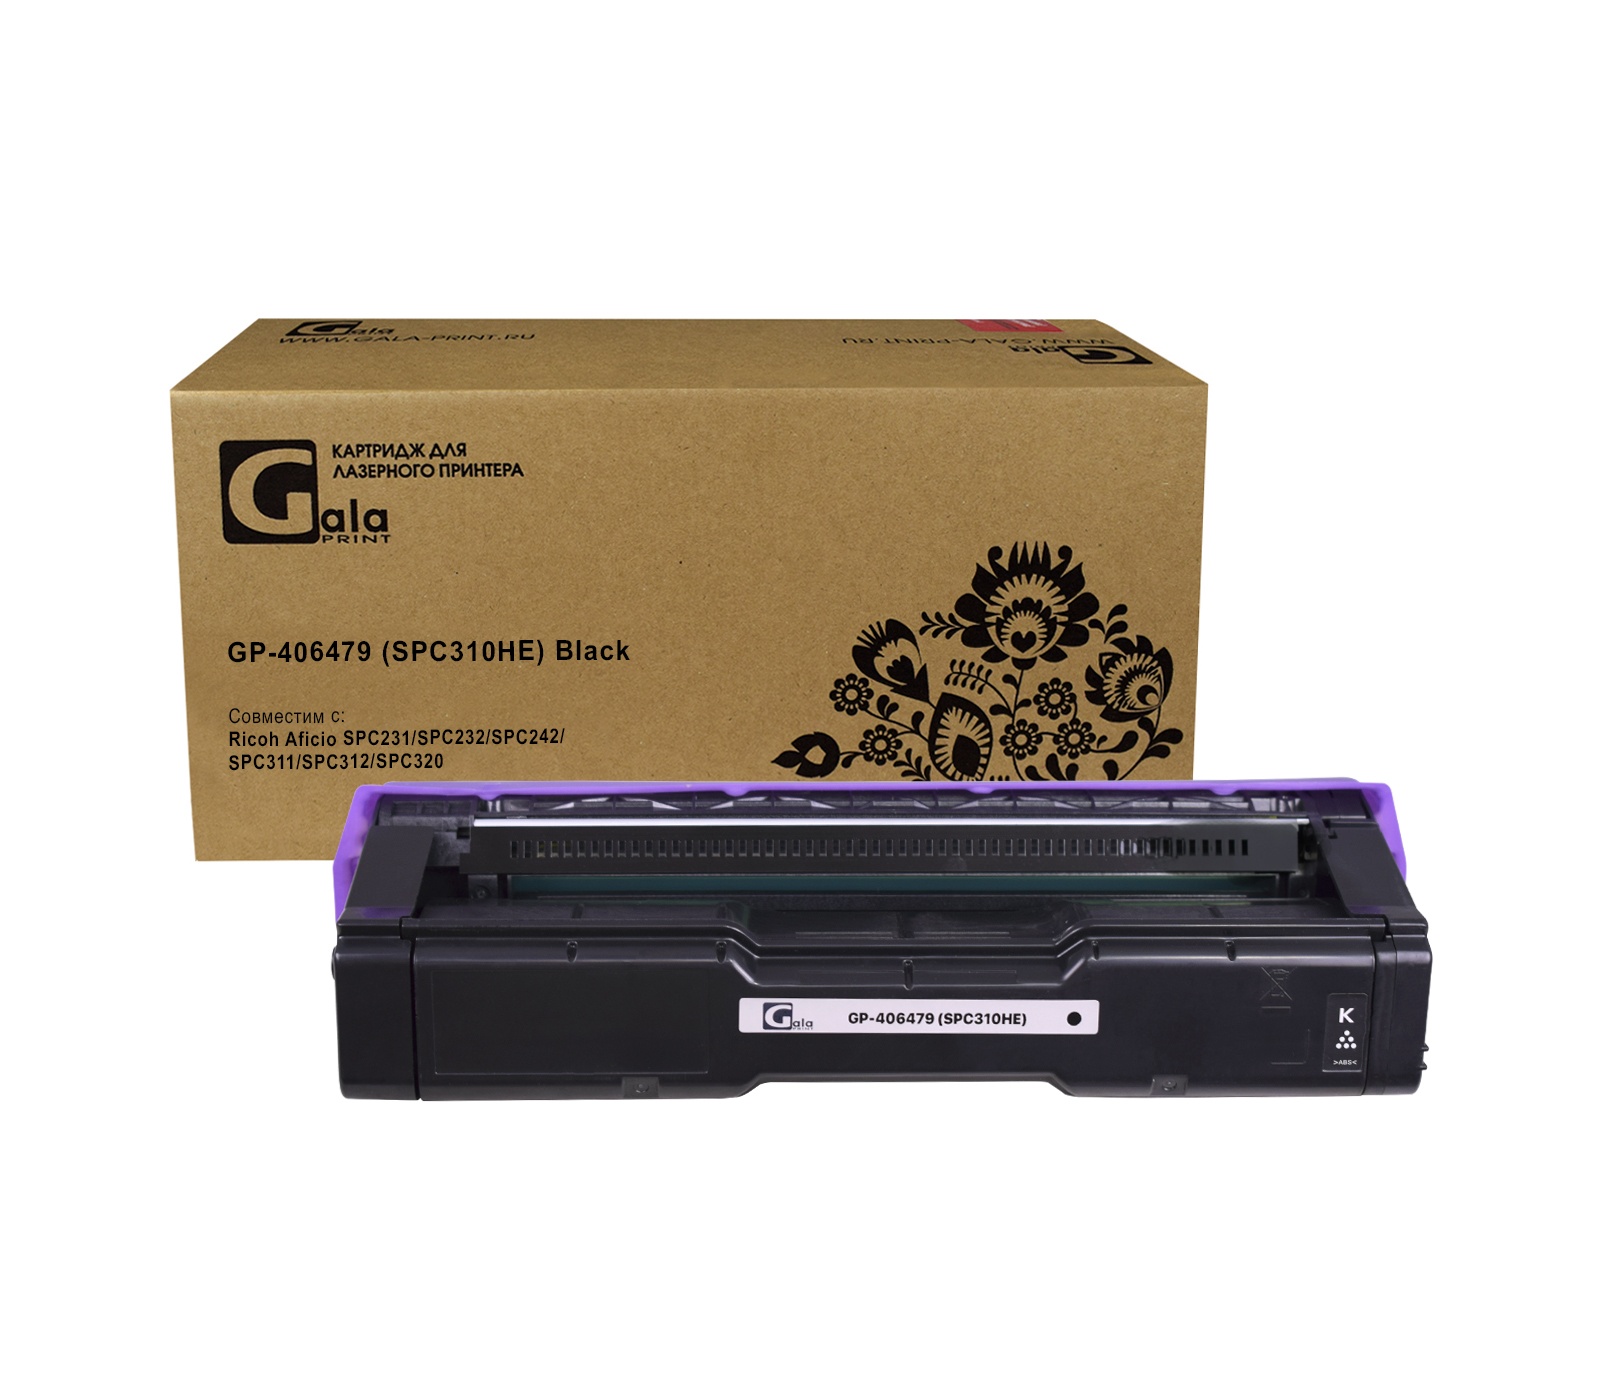 Картридж GP-406479 (SPC310HE) для принтеров Ricoh Aficio SPC231/SPC232/SPC242/SPC311/SPC312/SPC320 Black 6500 копий GalaPrint